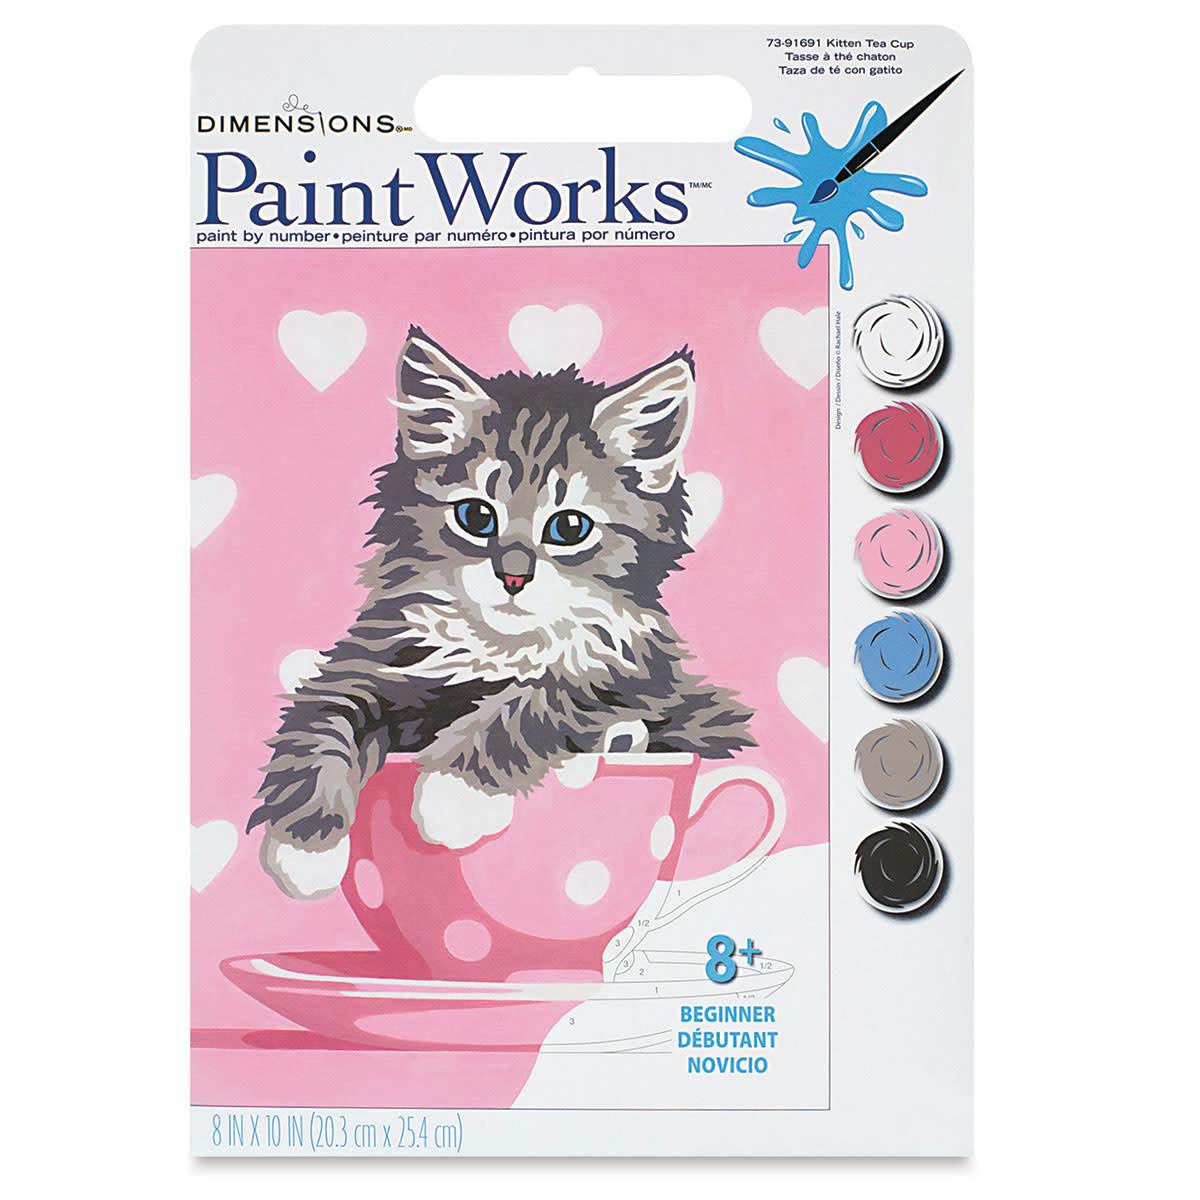 Paint Works - Kitten Tea Cup - La Ribouldingue